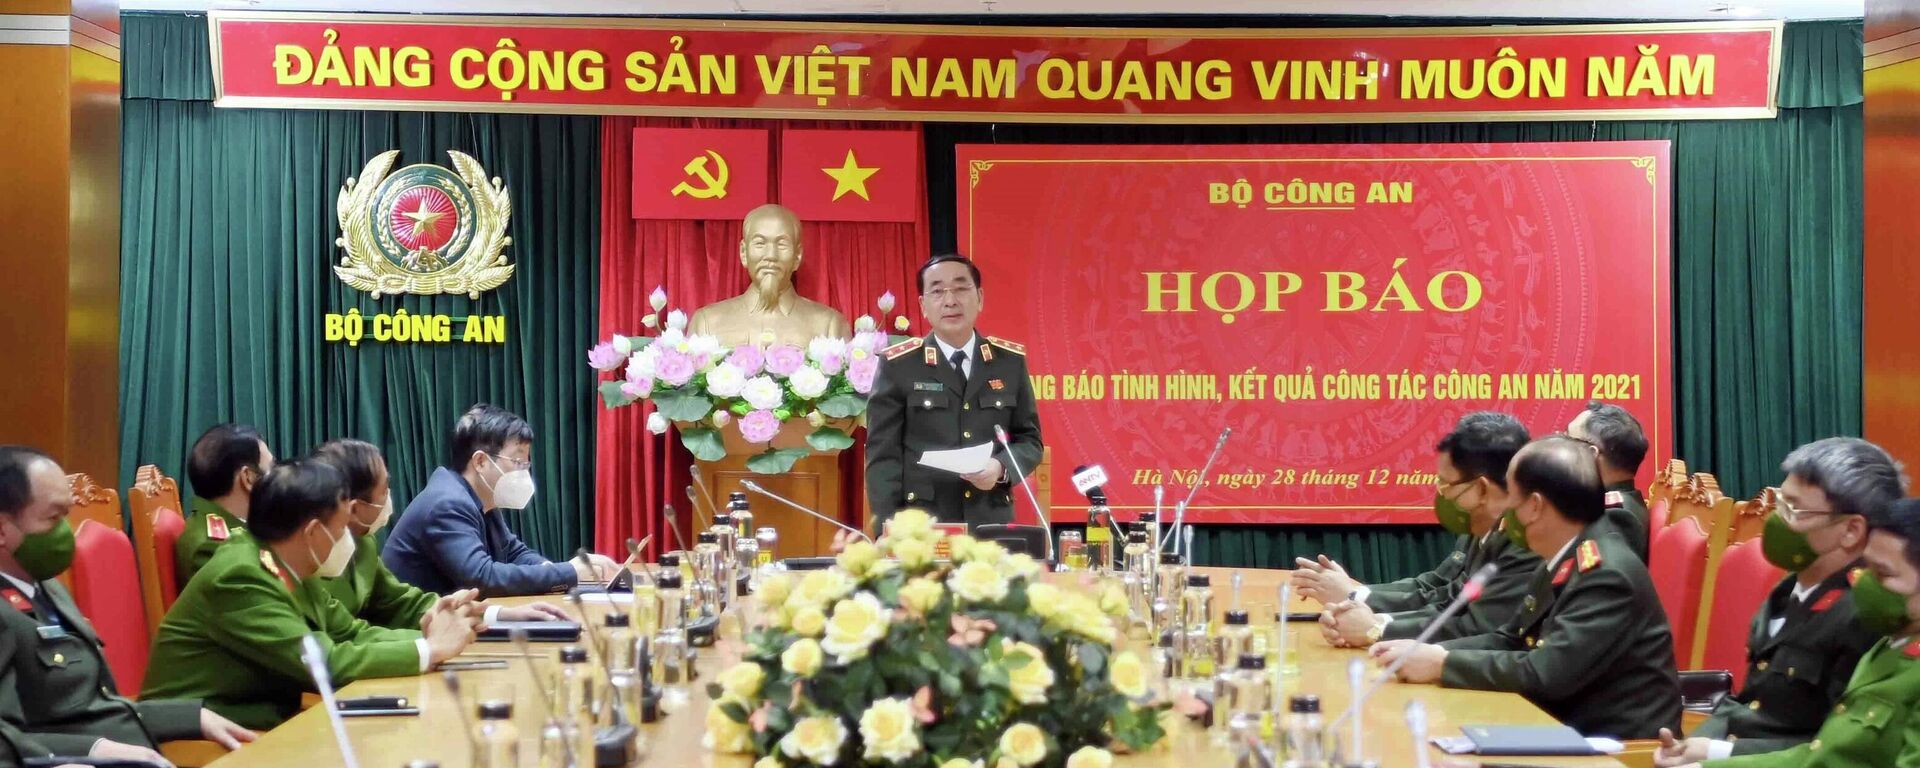 Quang cảnh buổi họp báo - Sputnik Việt Nam, 1920, 28.12.2021